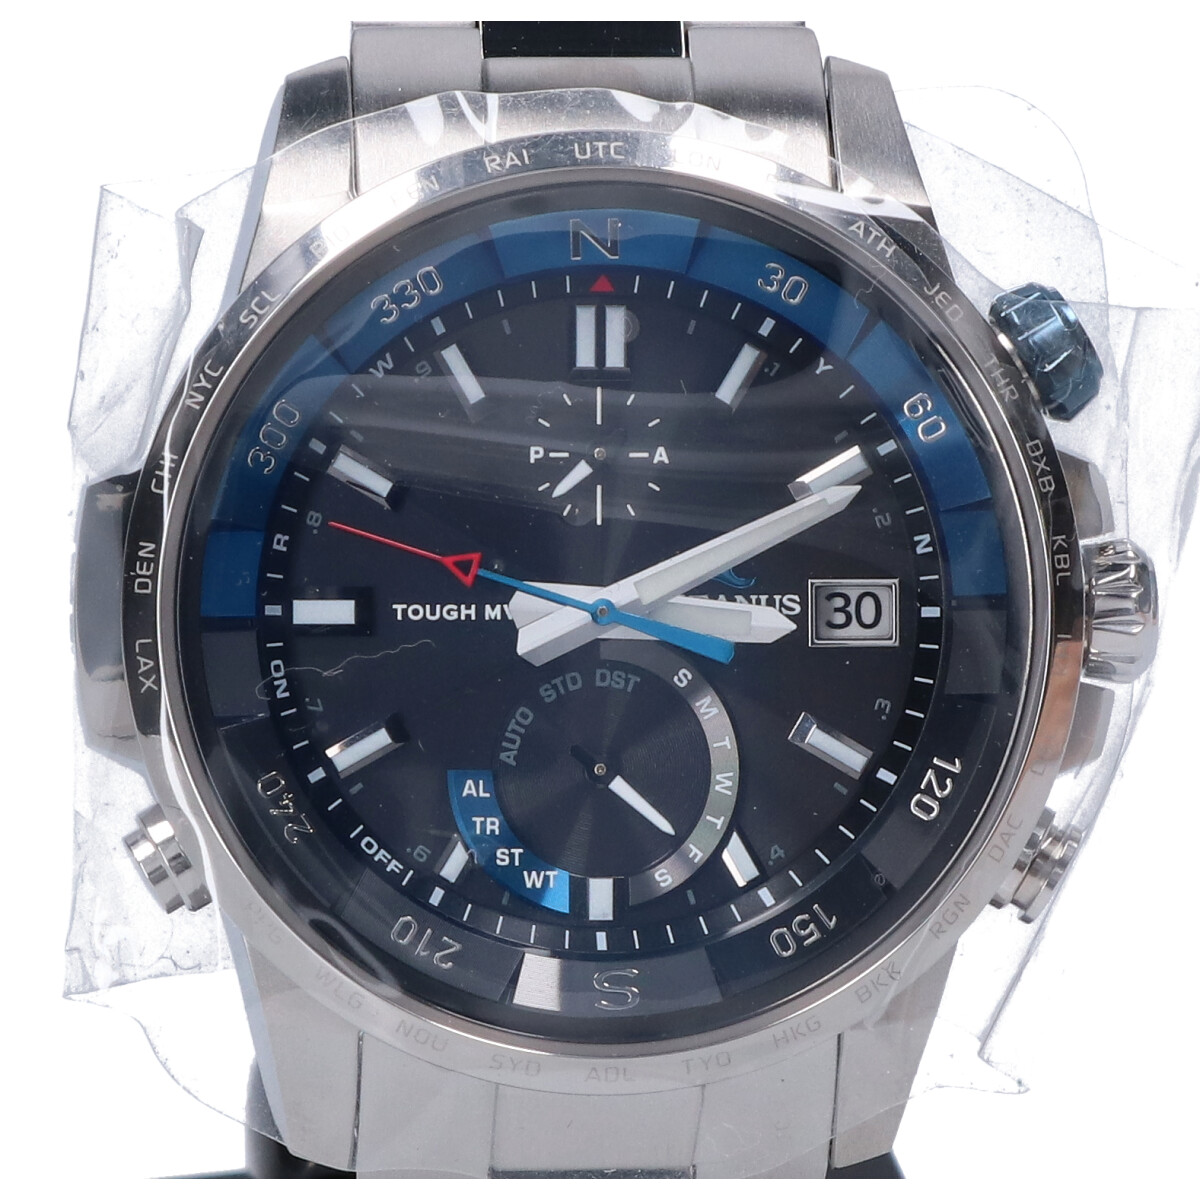 カシオのOCW-P1000-1AJF オシアナス シルバー 腕時計の買取実績です。